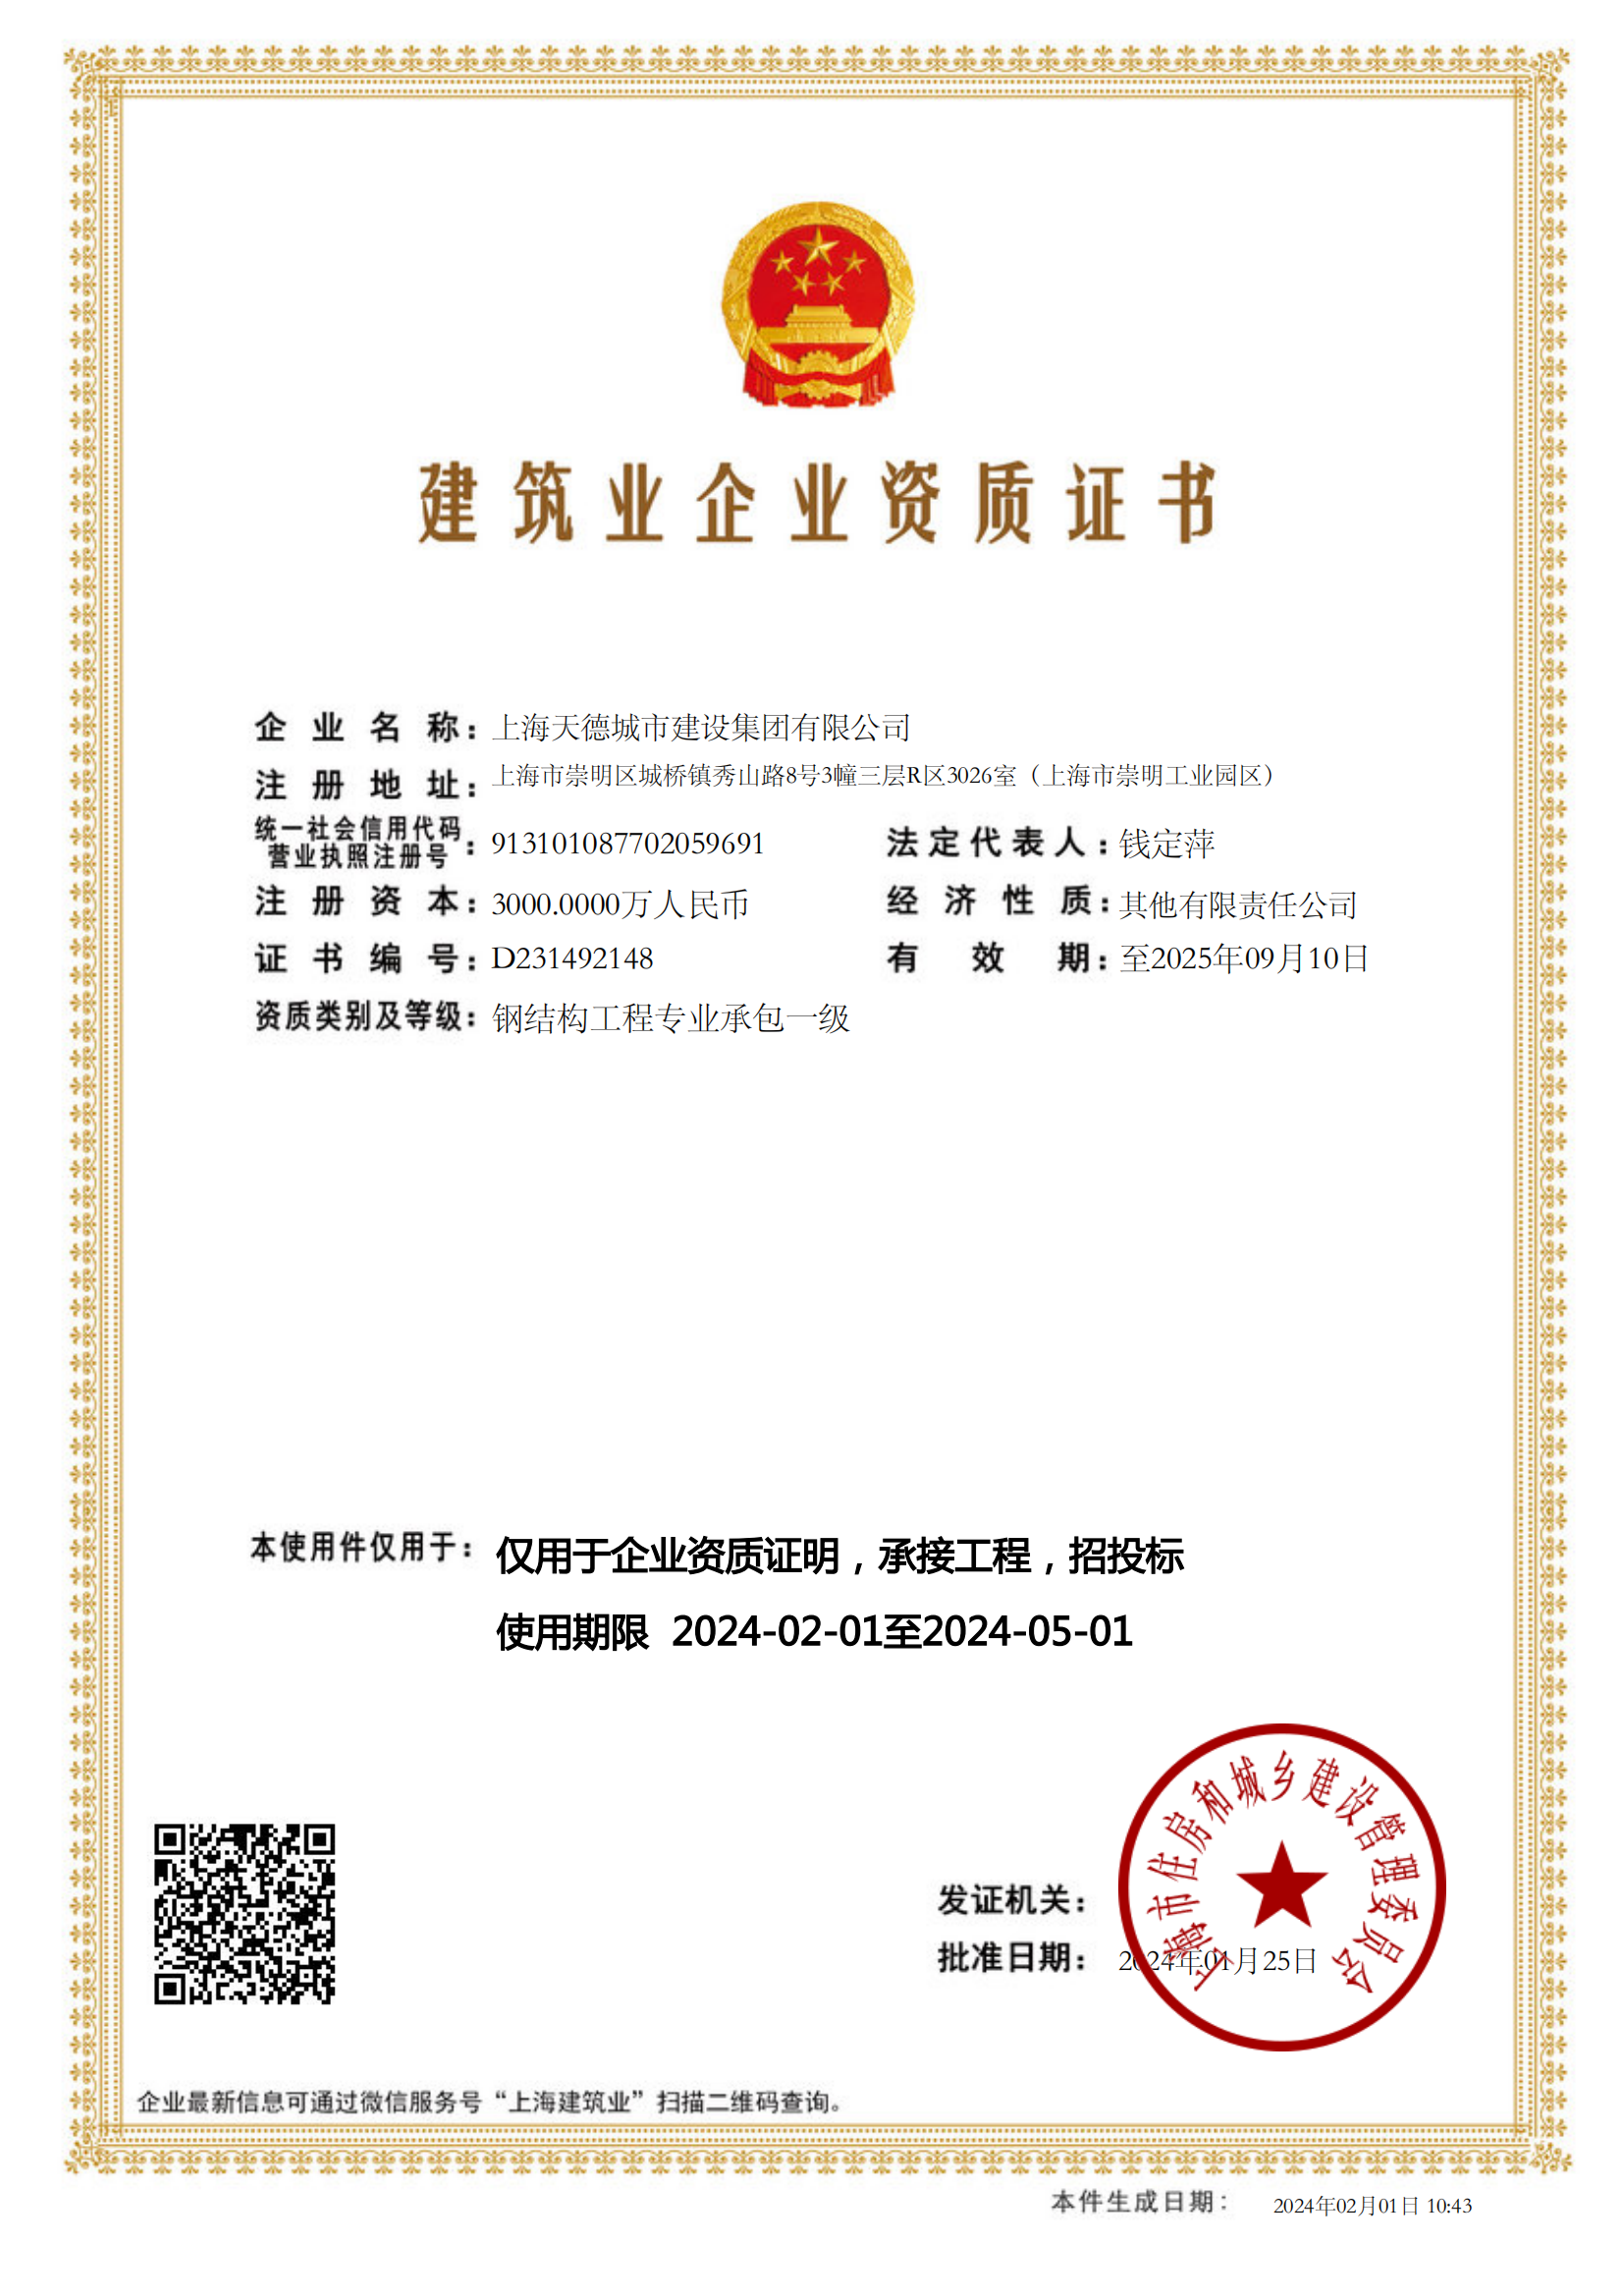 上海天德城市建设集团有限公司建筑业企业资质证书-20240201104323592_00.png